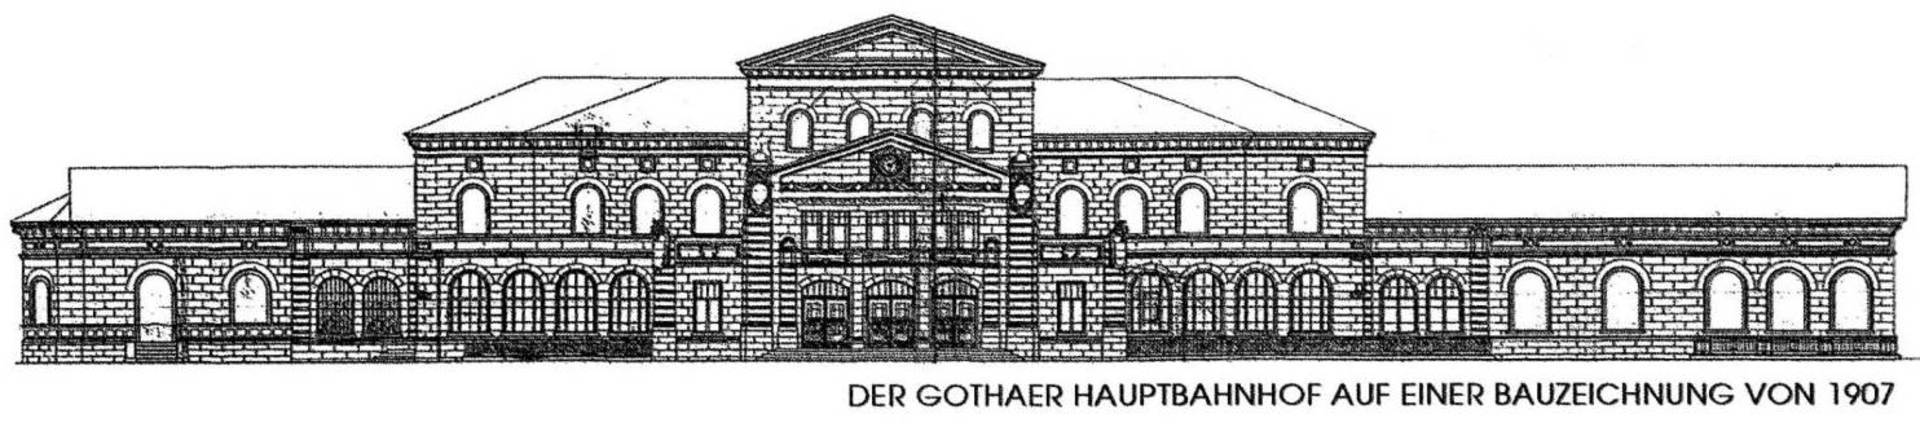 Bauzeichnung Bahnhof Gotha von 1907